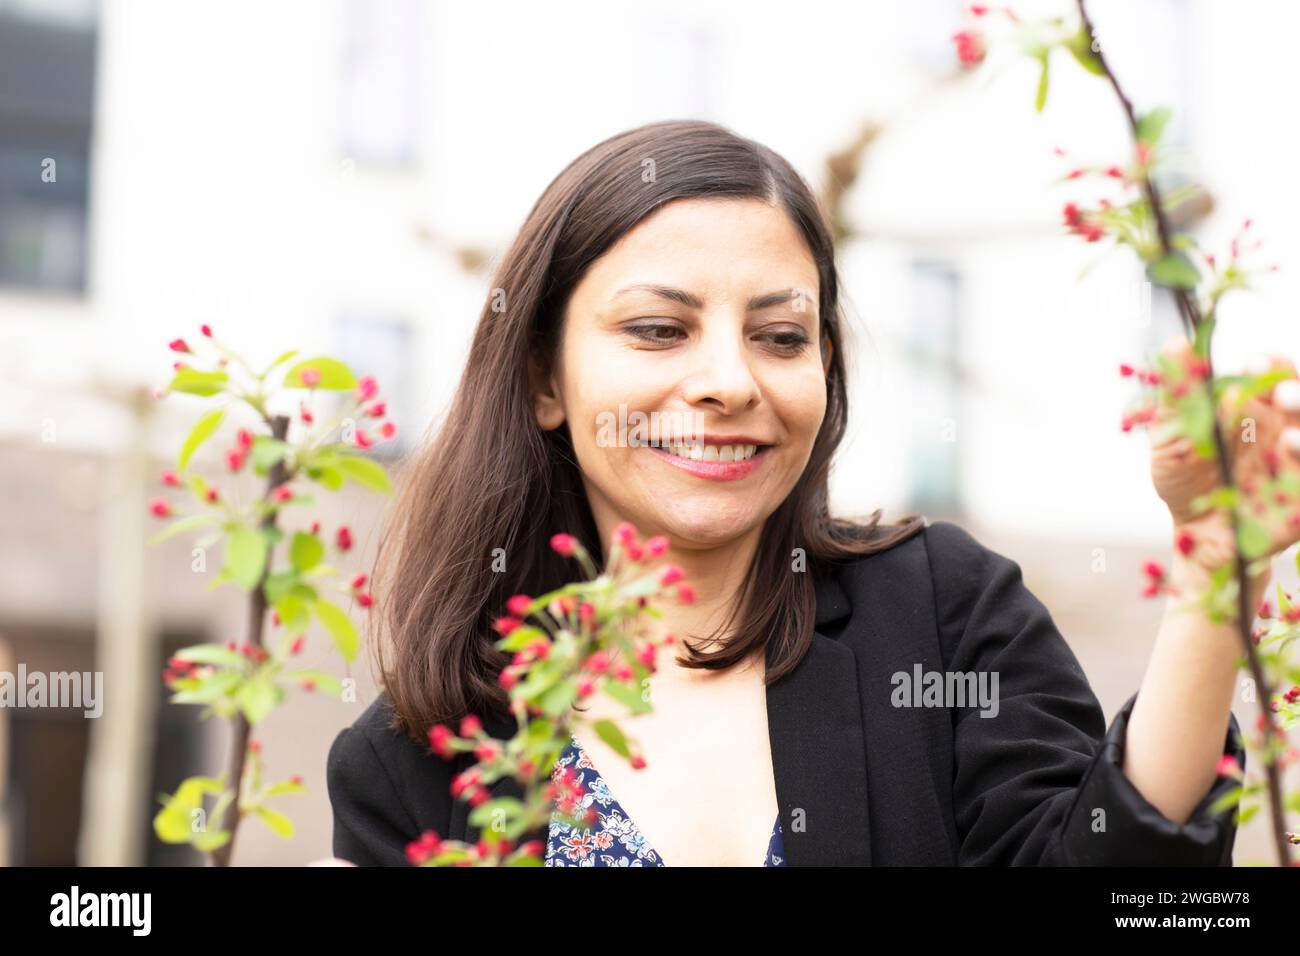 Femme souriante debout dans son jardin s'occupant de ses plantes, Allemagne Banque D'Images